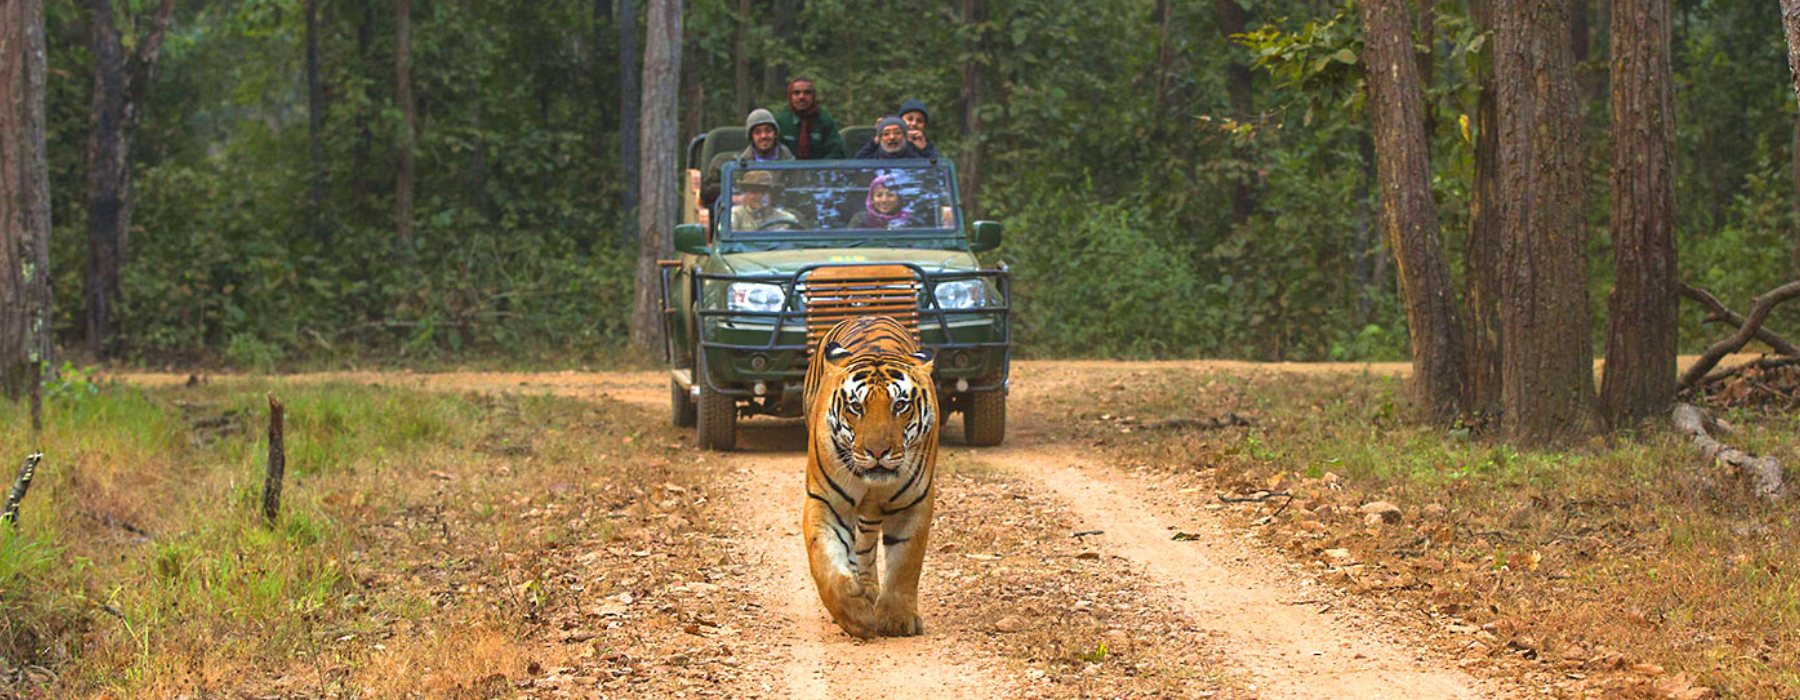 India Tiger, Delhi Jaipur Agra Holidays
